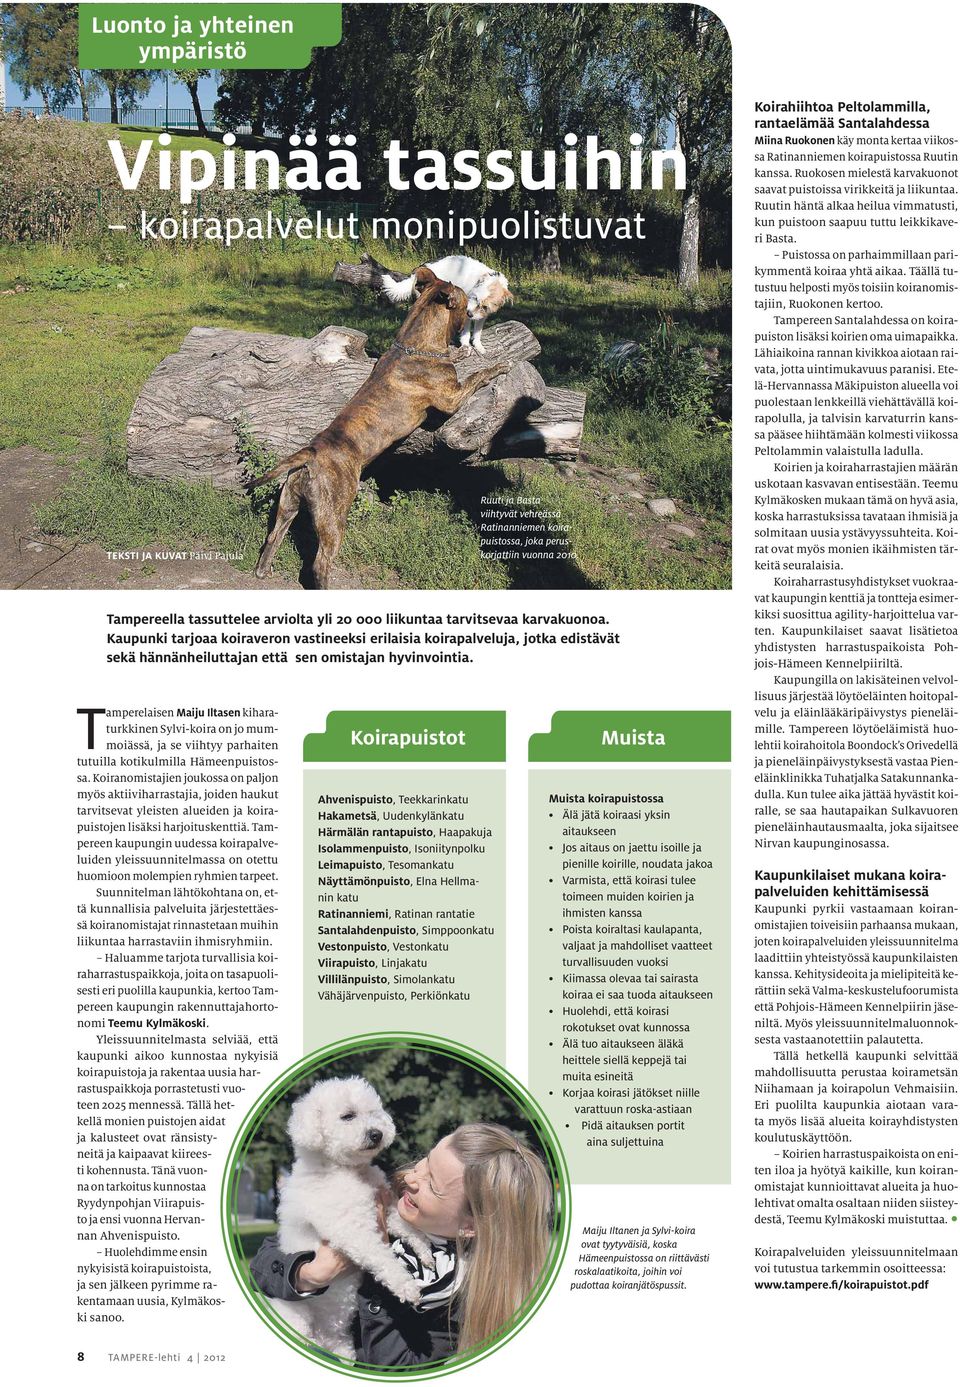 Tampereen kaupungin uudessa koirapalveluiden yleissuunnitelmassa on otettu huomioon molempien ryhmien tarpeet.